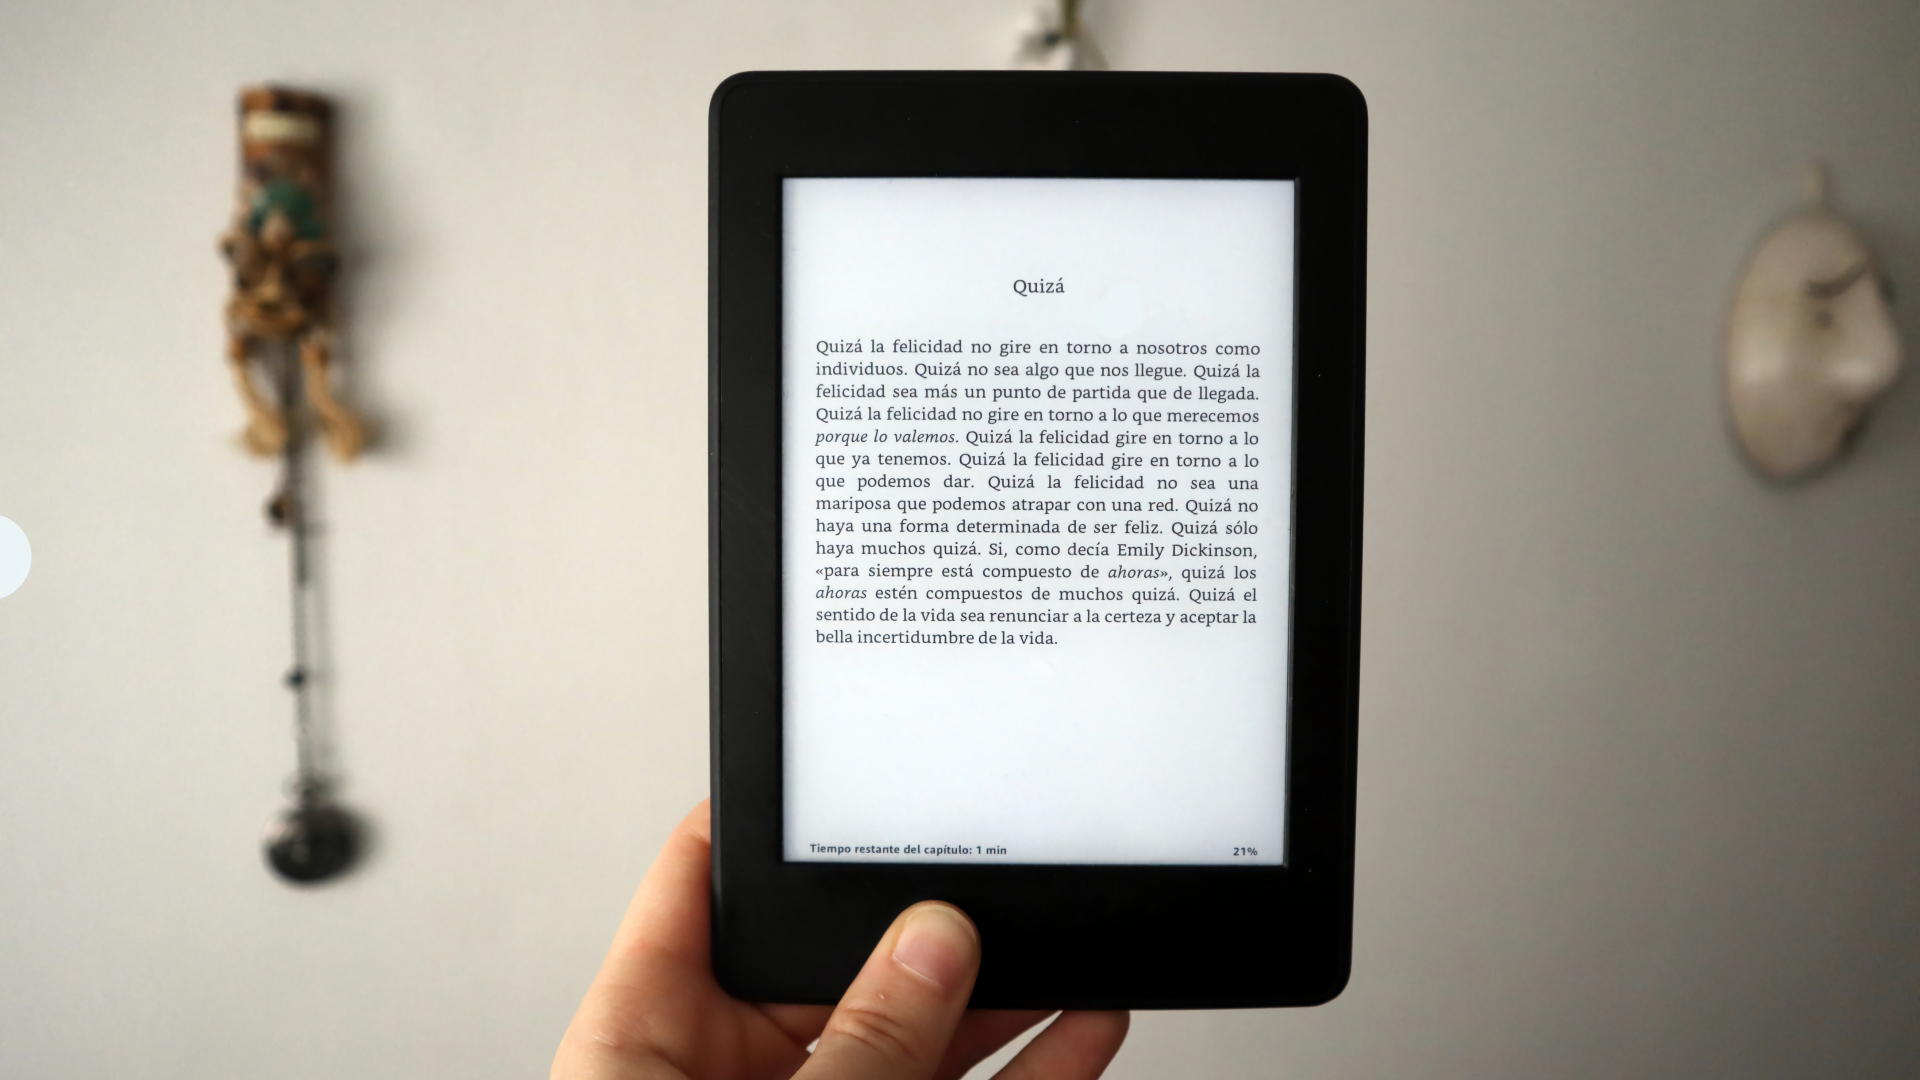 Accesorios para Kindle Paperwhite que ahora puedes comprar rebajados